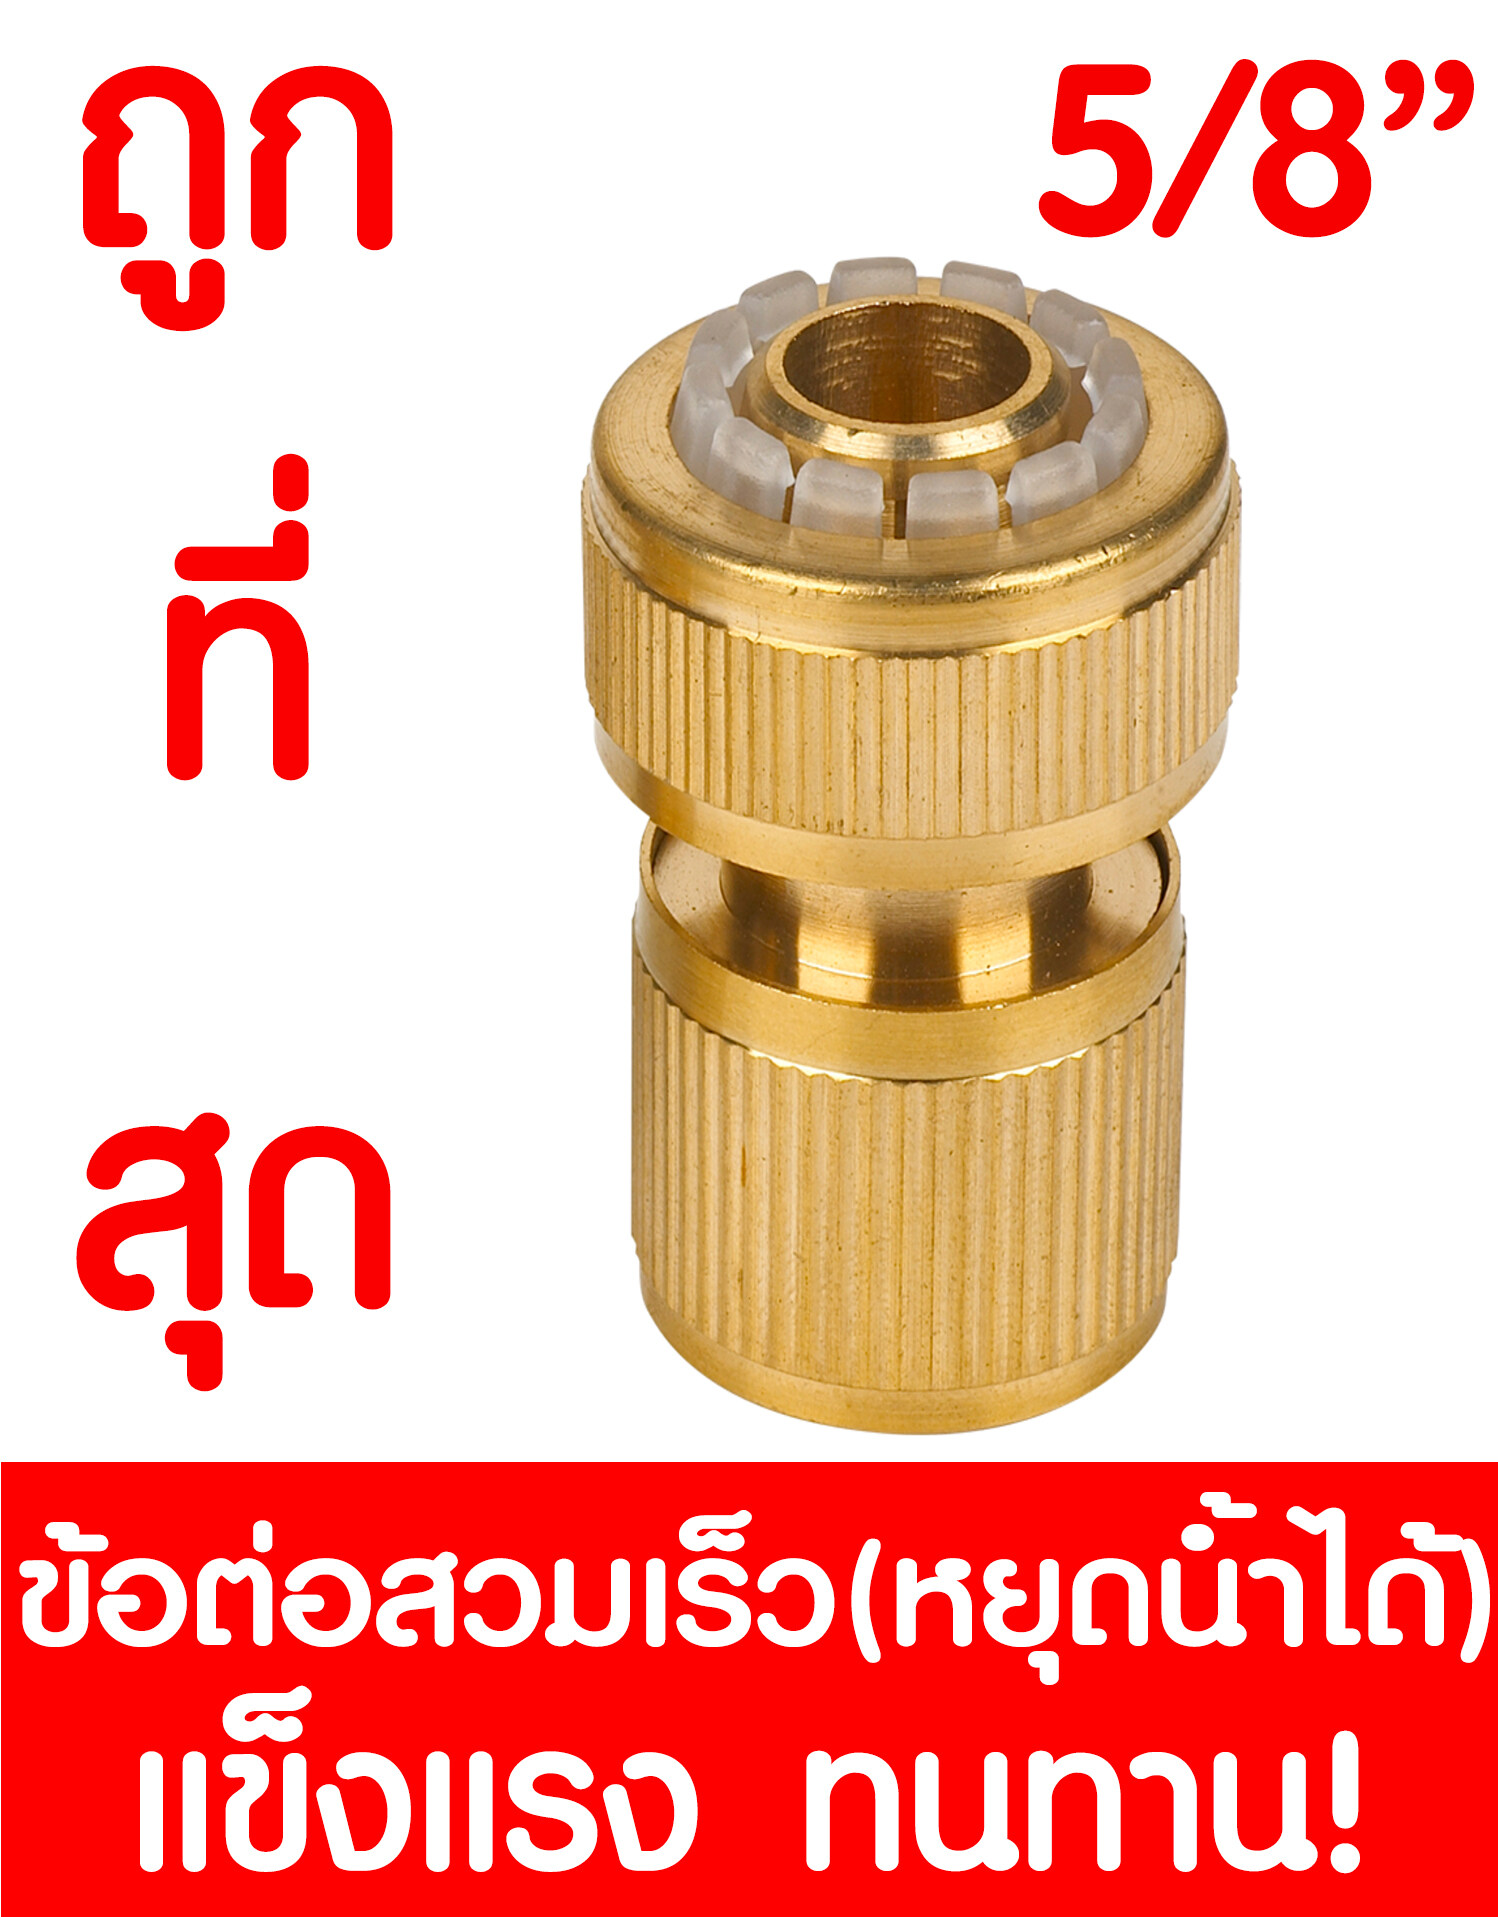 ข้อต่อทองเหลือง หยุดน้ำได้ 5/8 5หุน ข้อต่อสวมเร็ว ทองเหลือง ข้อต่อสายยางทองเหลือง ทองเหลืองข้อต่อสวมเร็ว  brass tap connector 5/8 5/8 12878